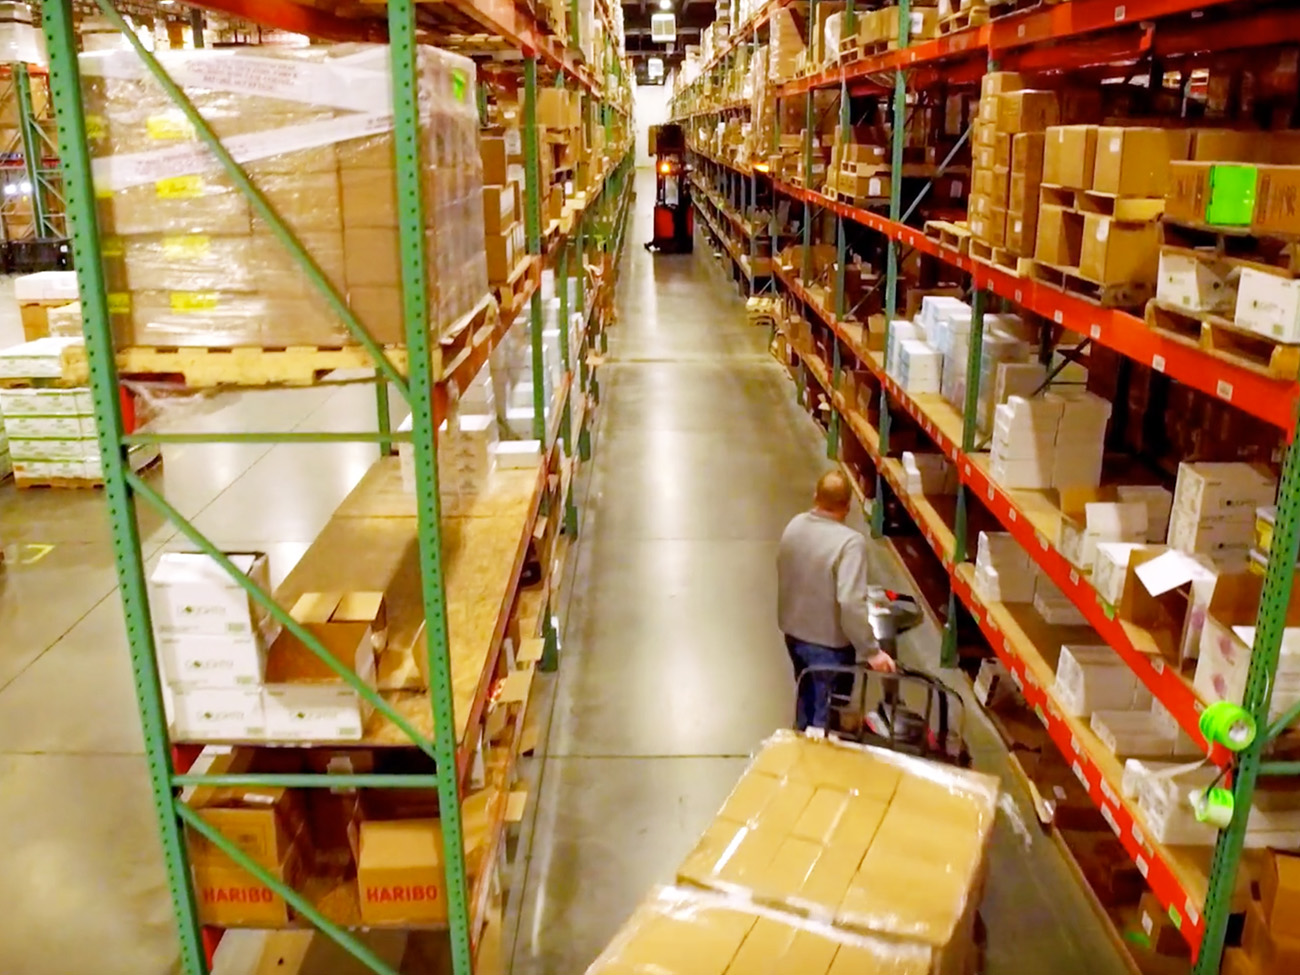 Warehouse aisle